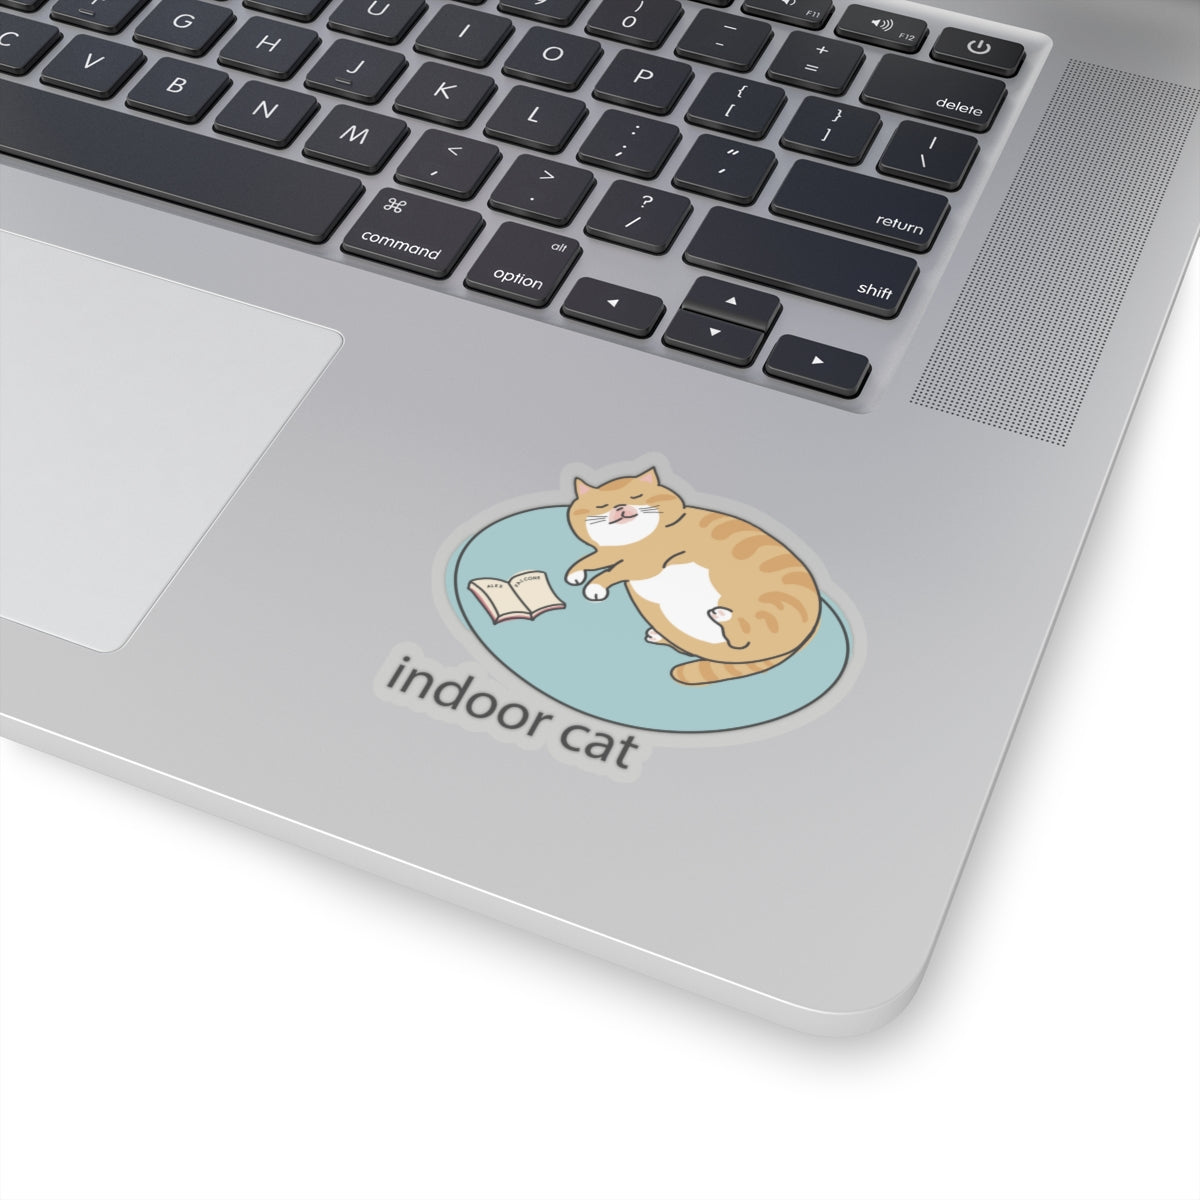 Indoor Cat - Sticker